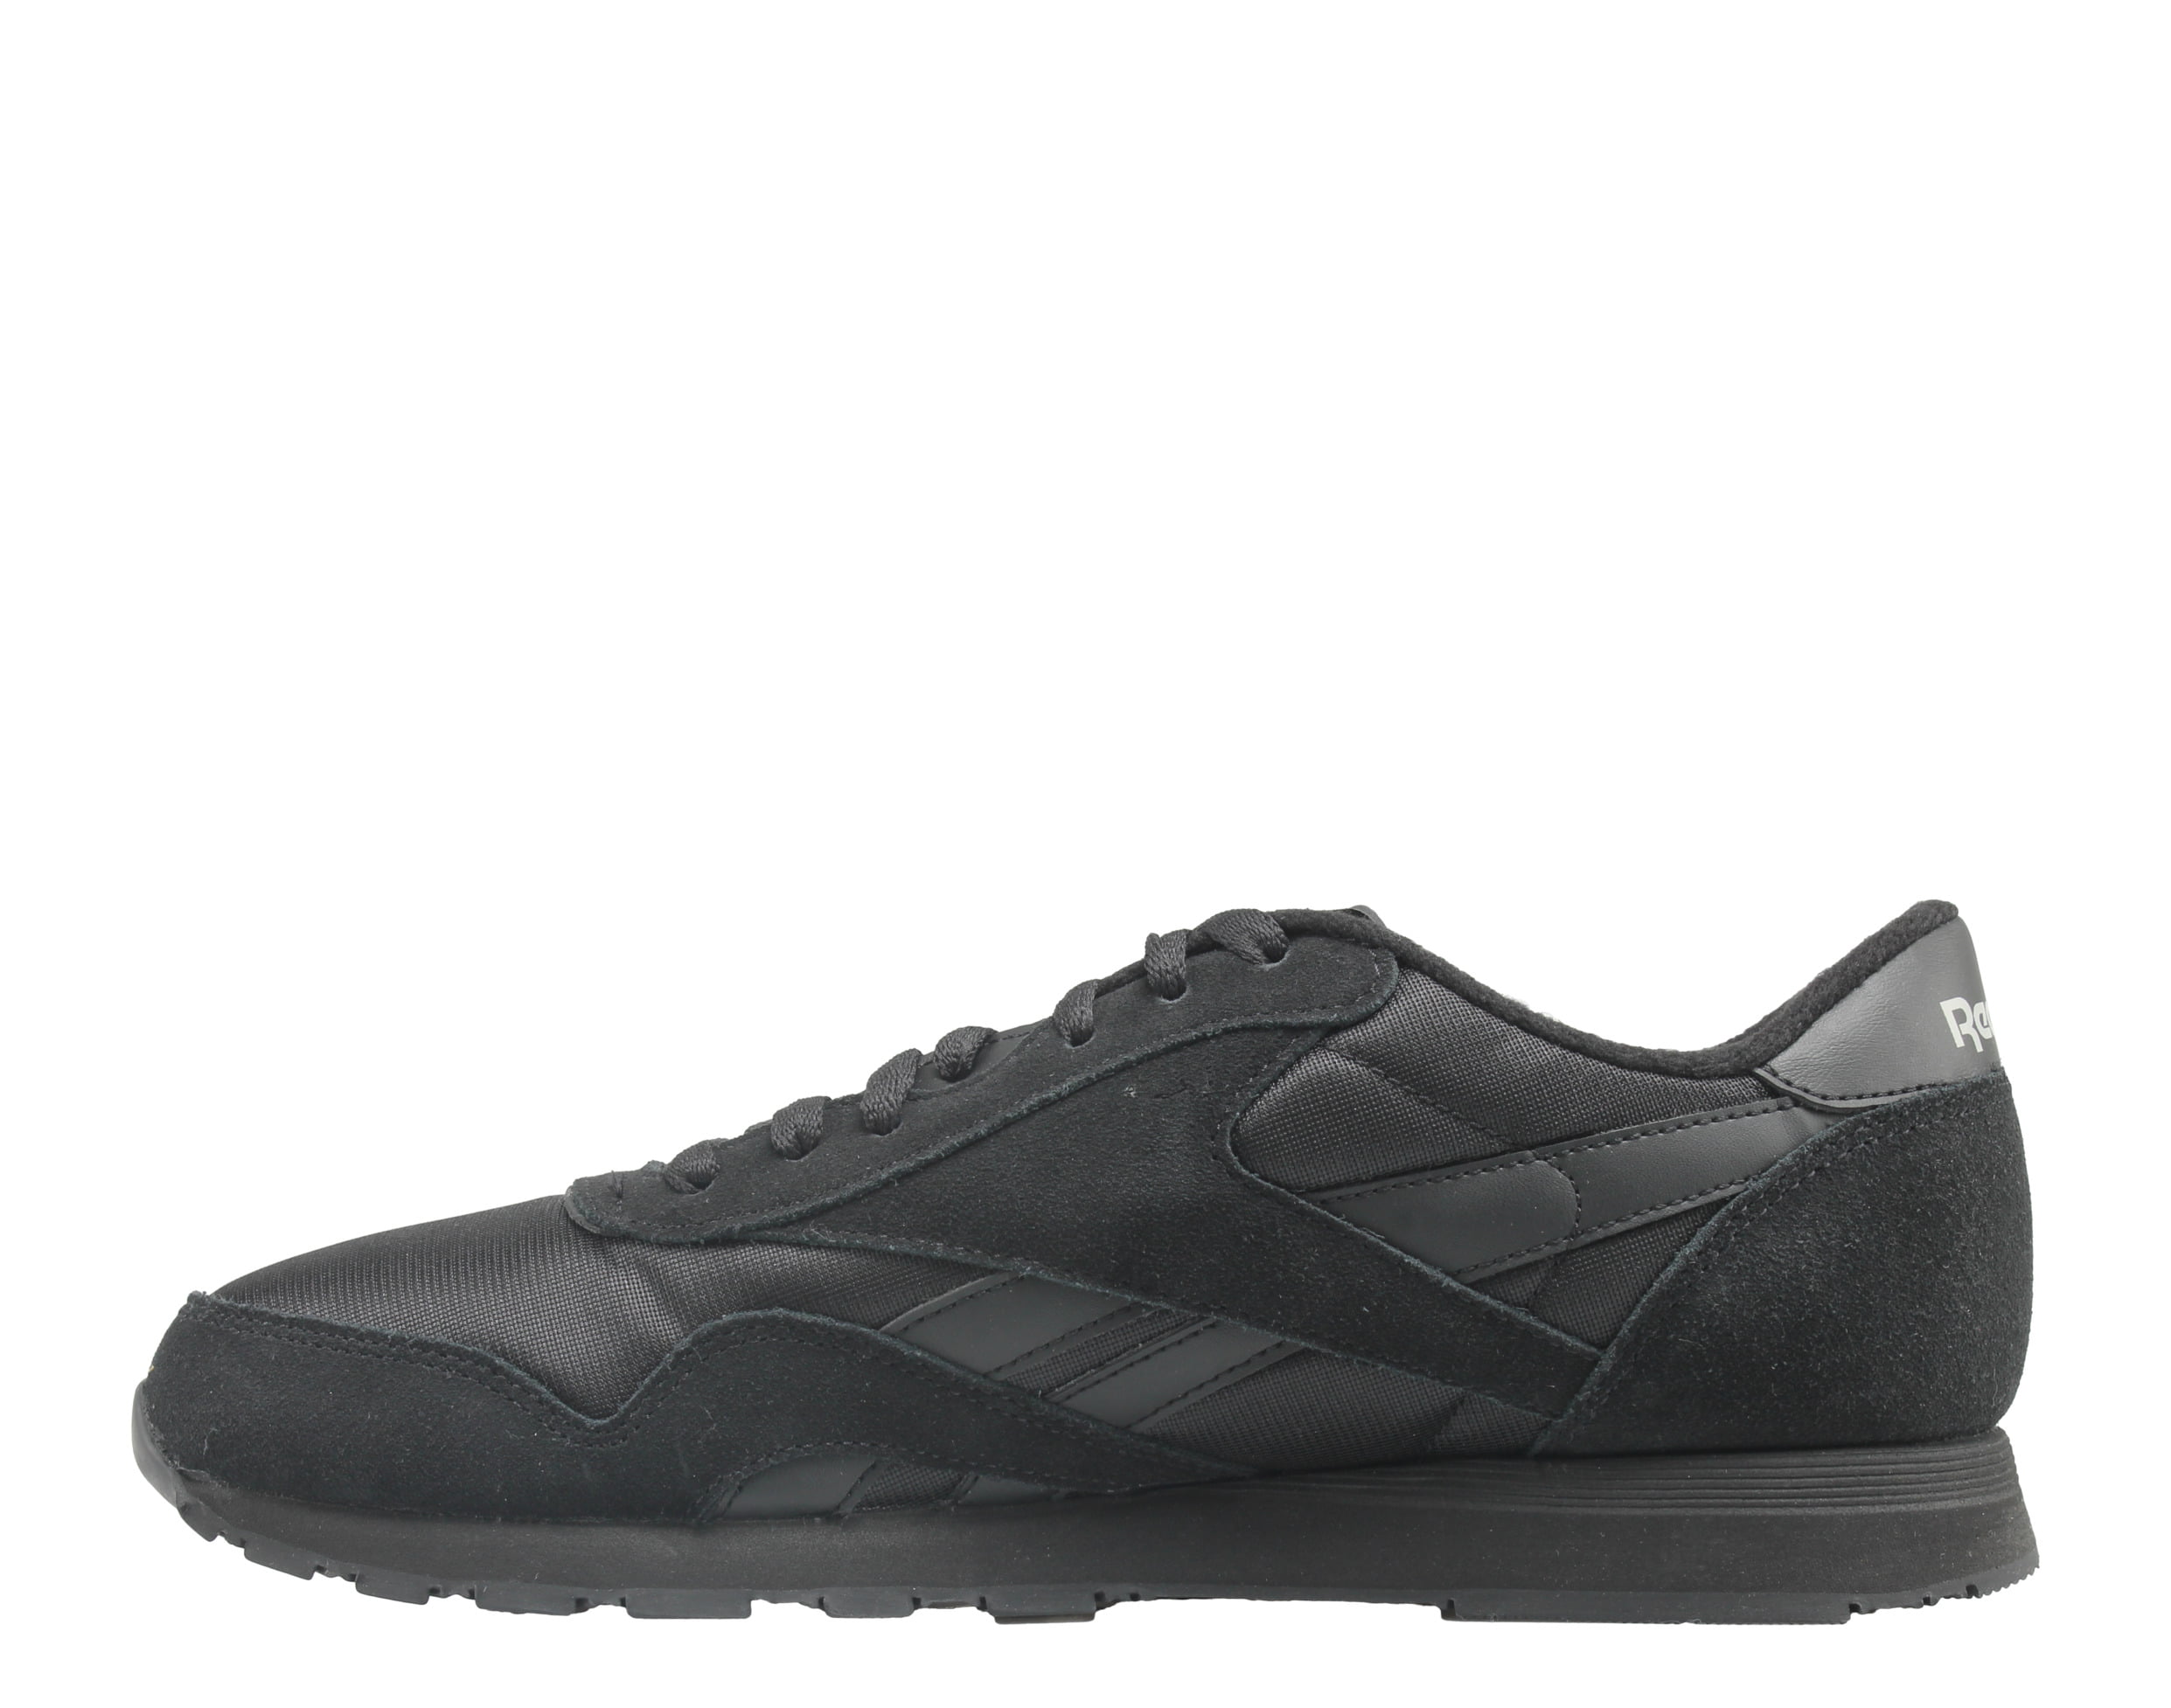 Reebok Classic Nylon Men's Sneaker Running Shoe Black Athletic Trainer #273  #231